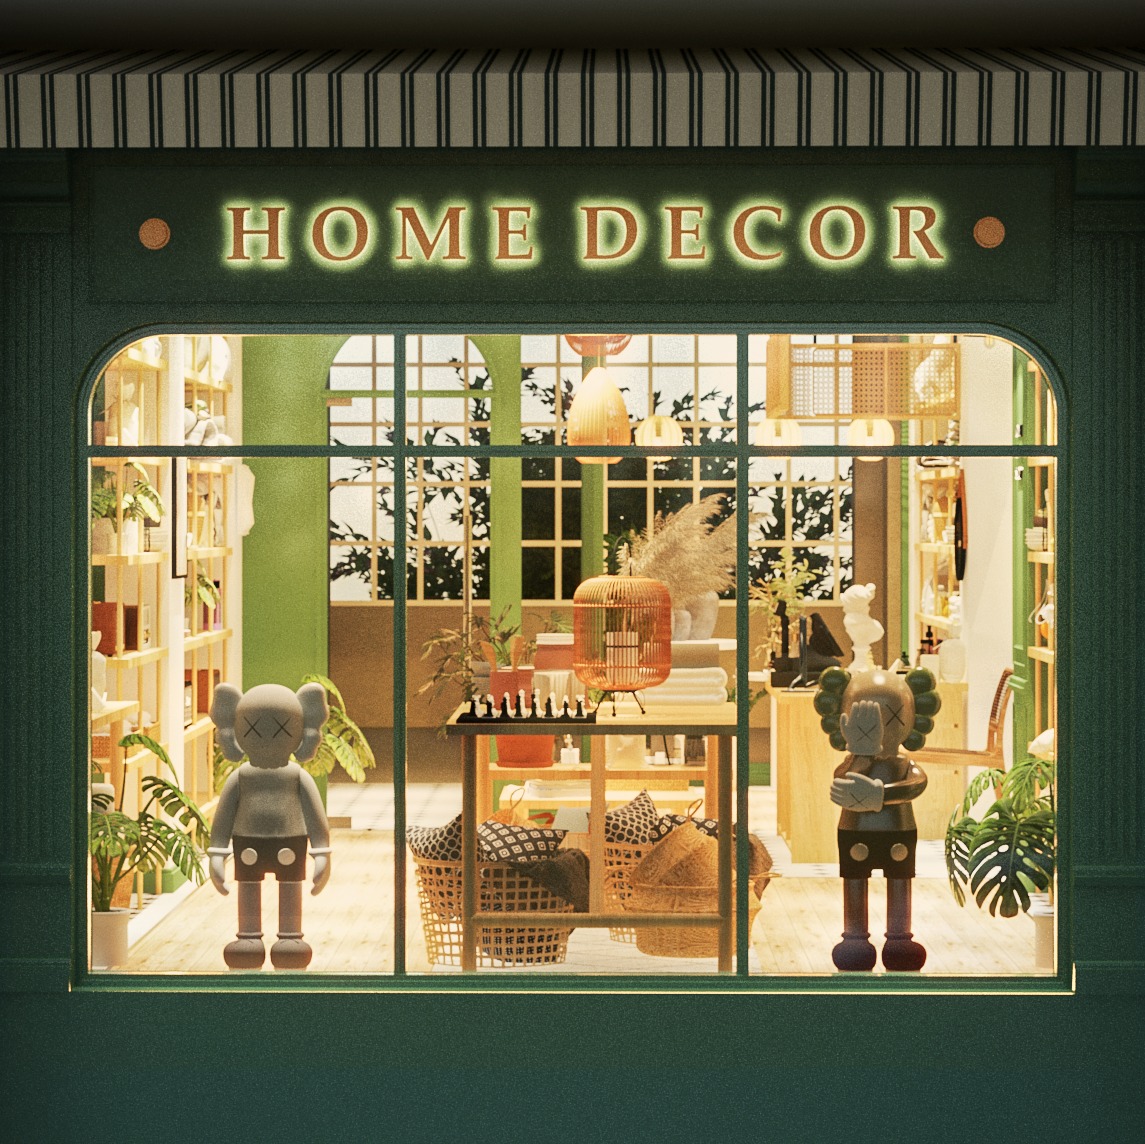 Home Decor Concept Store